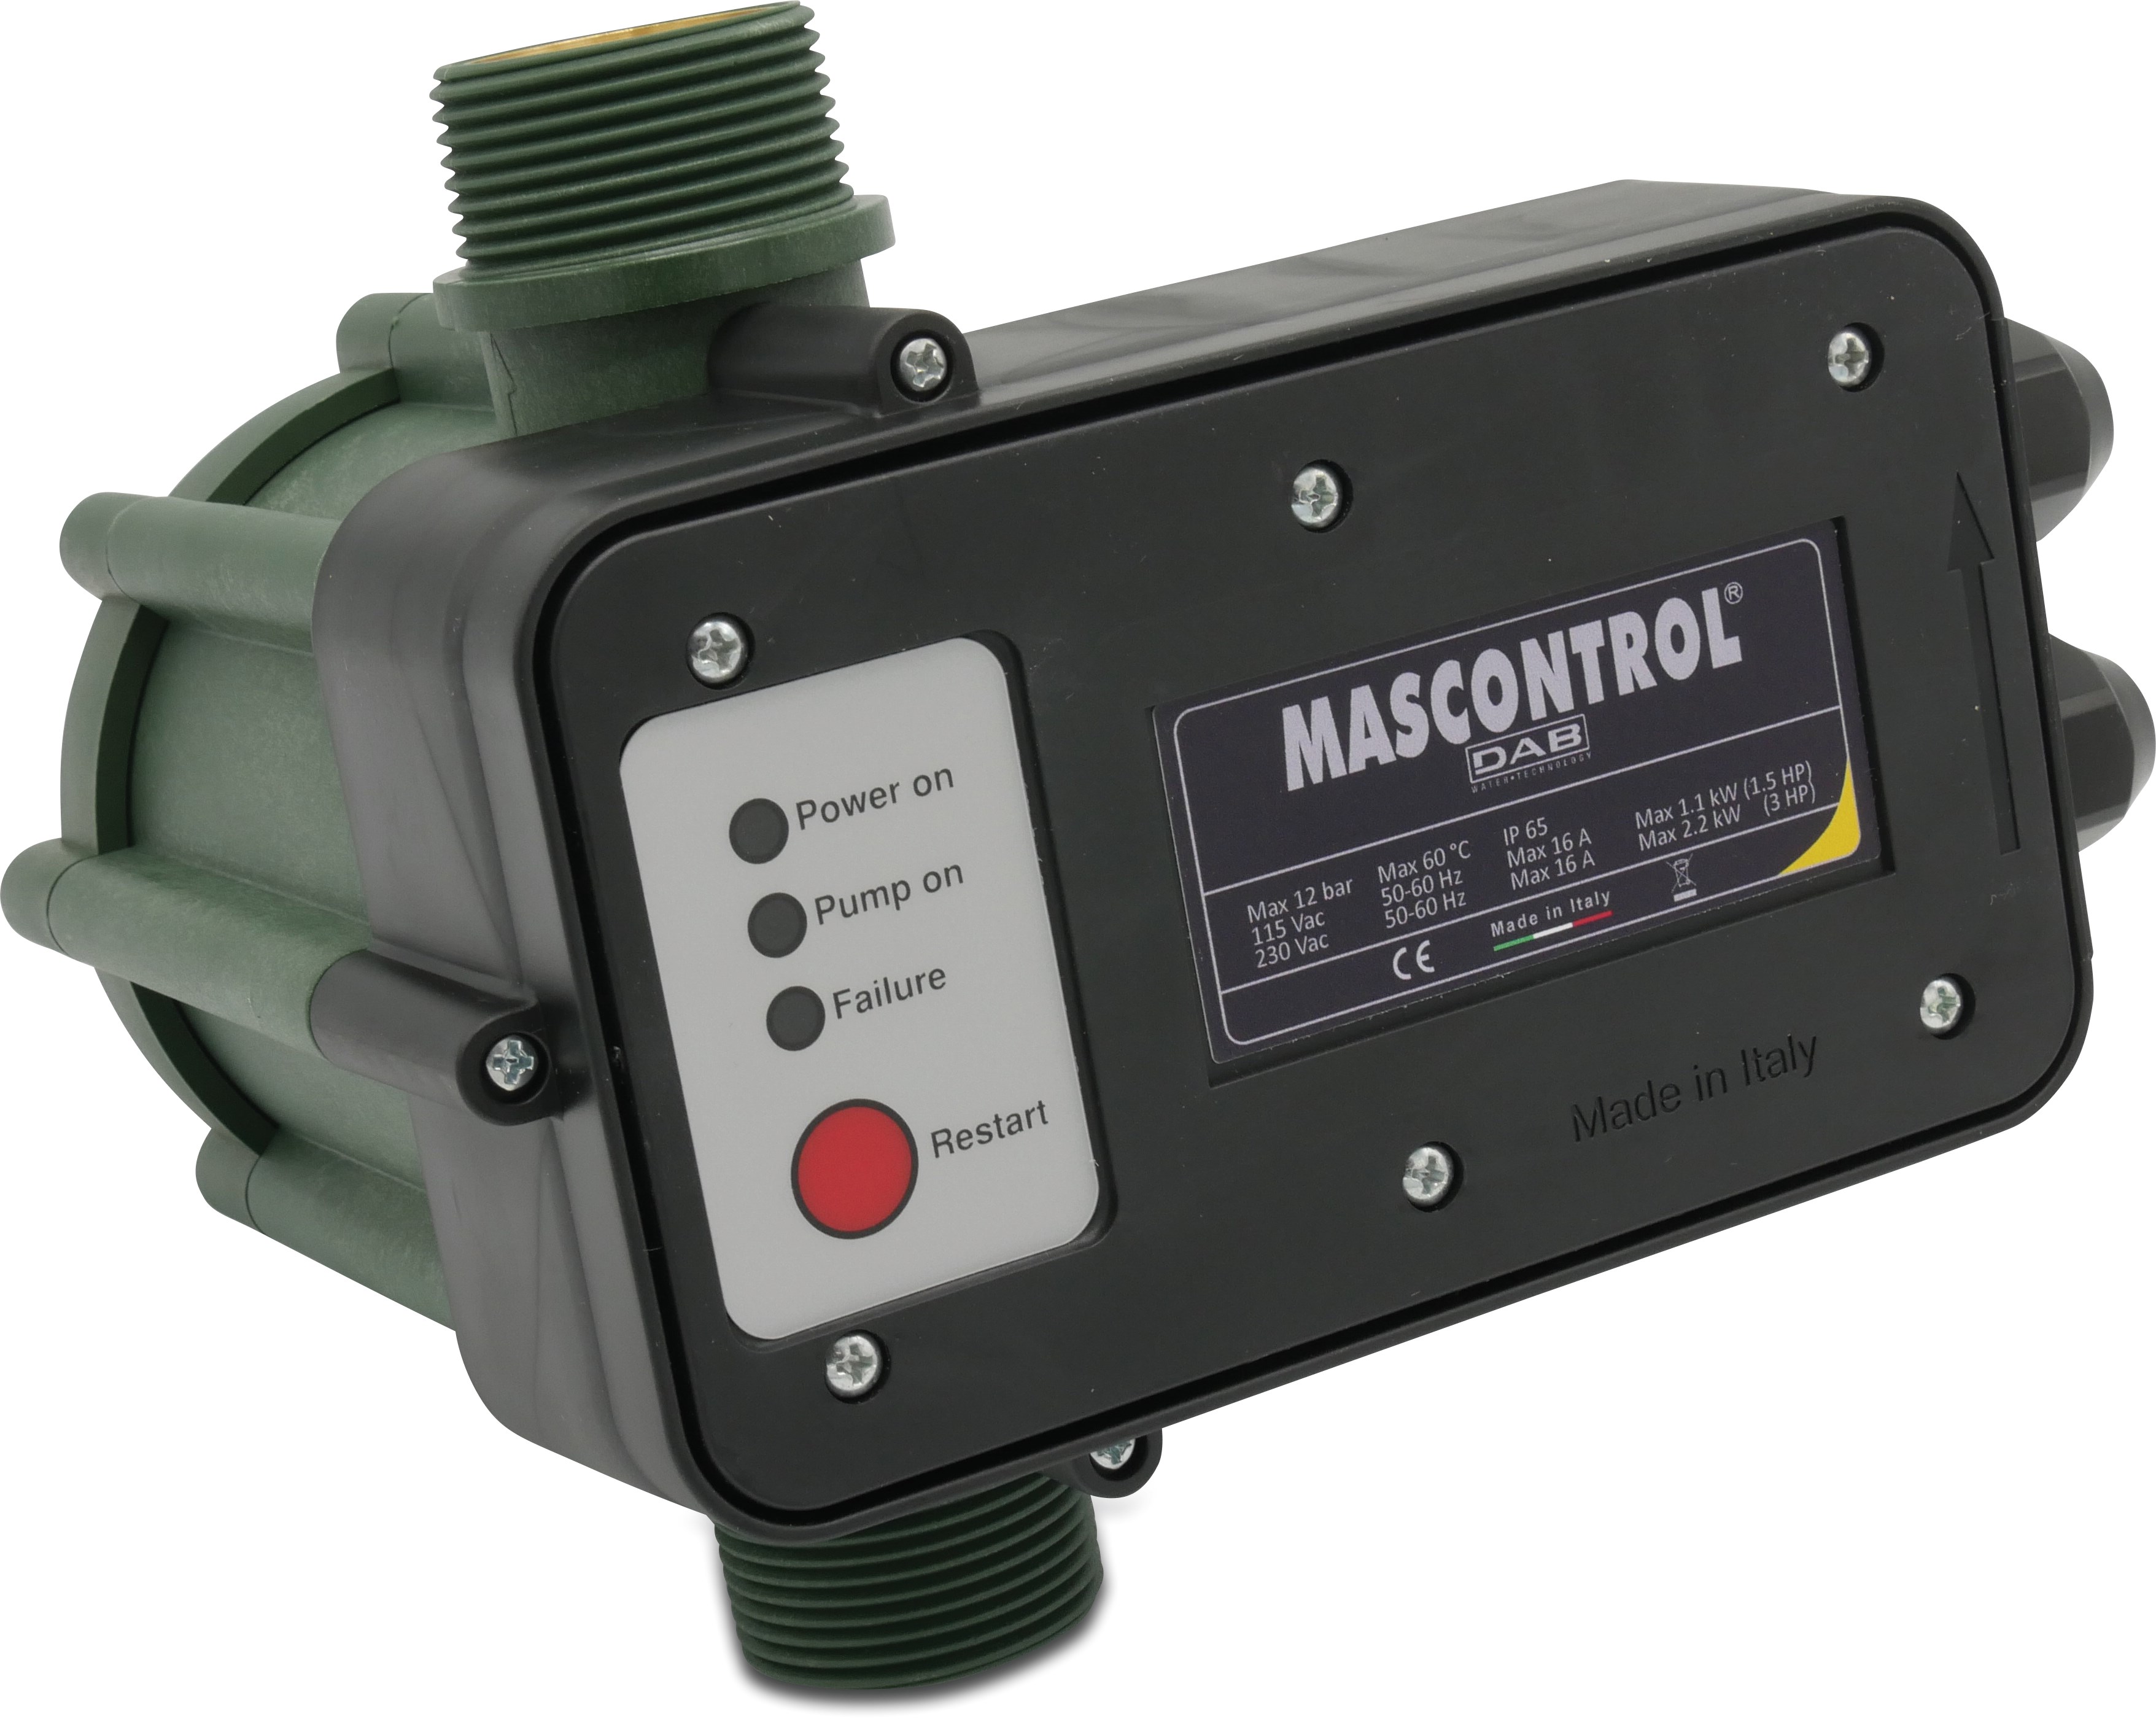 DAB Press control met droogloopbeveiliging 1 1/4" buitendraad 230VAC groen type Mas Control zonder kabel